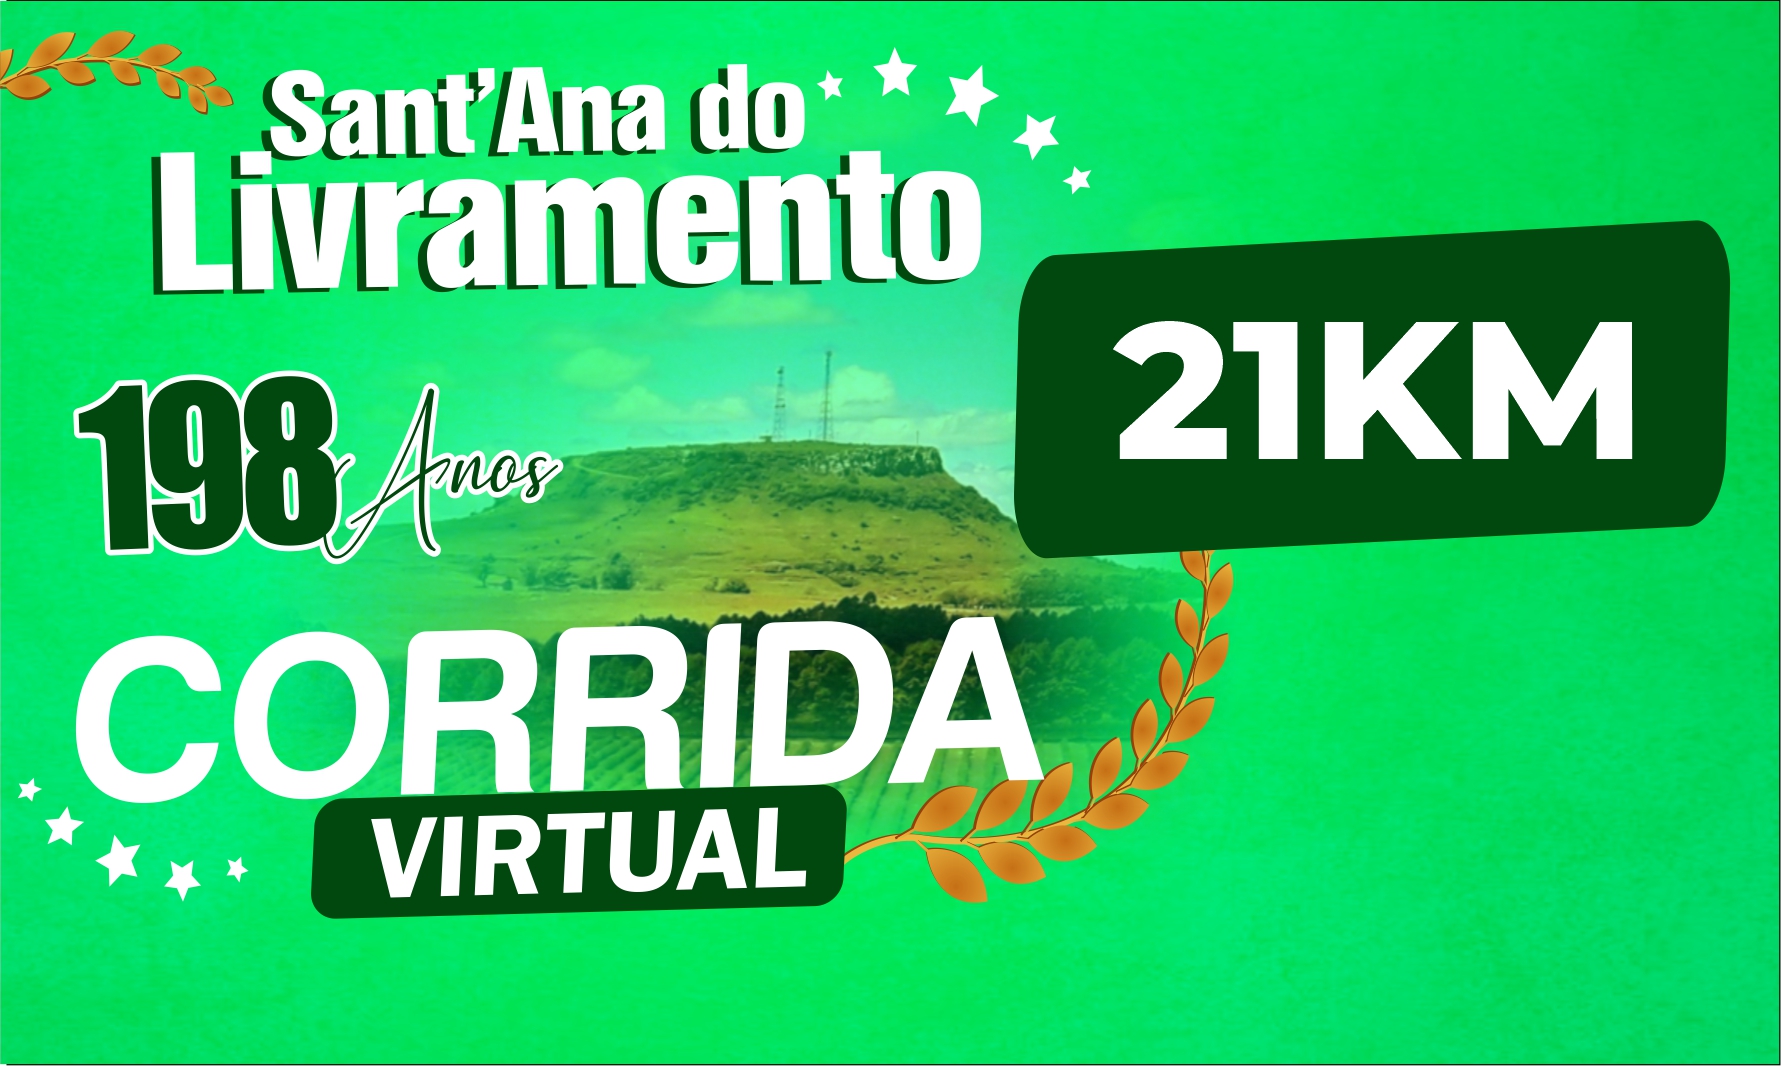 CORRIDA VIRTUAL 198 ANOS SANTANA DO LIVRAMENTO - 21KM